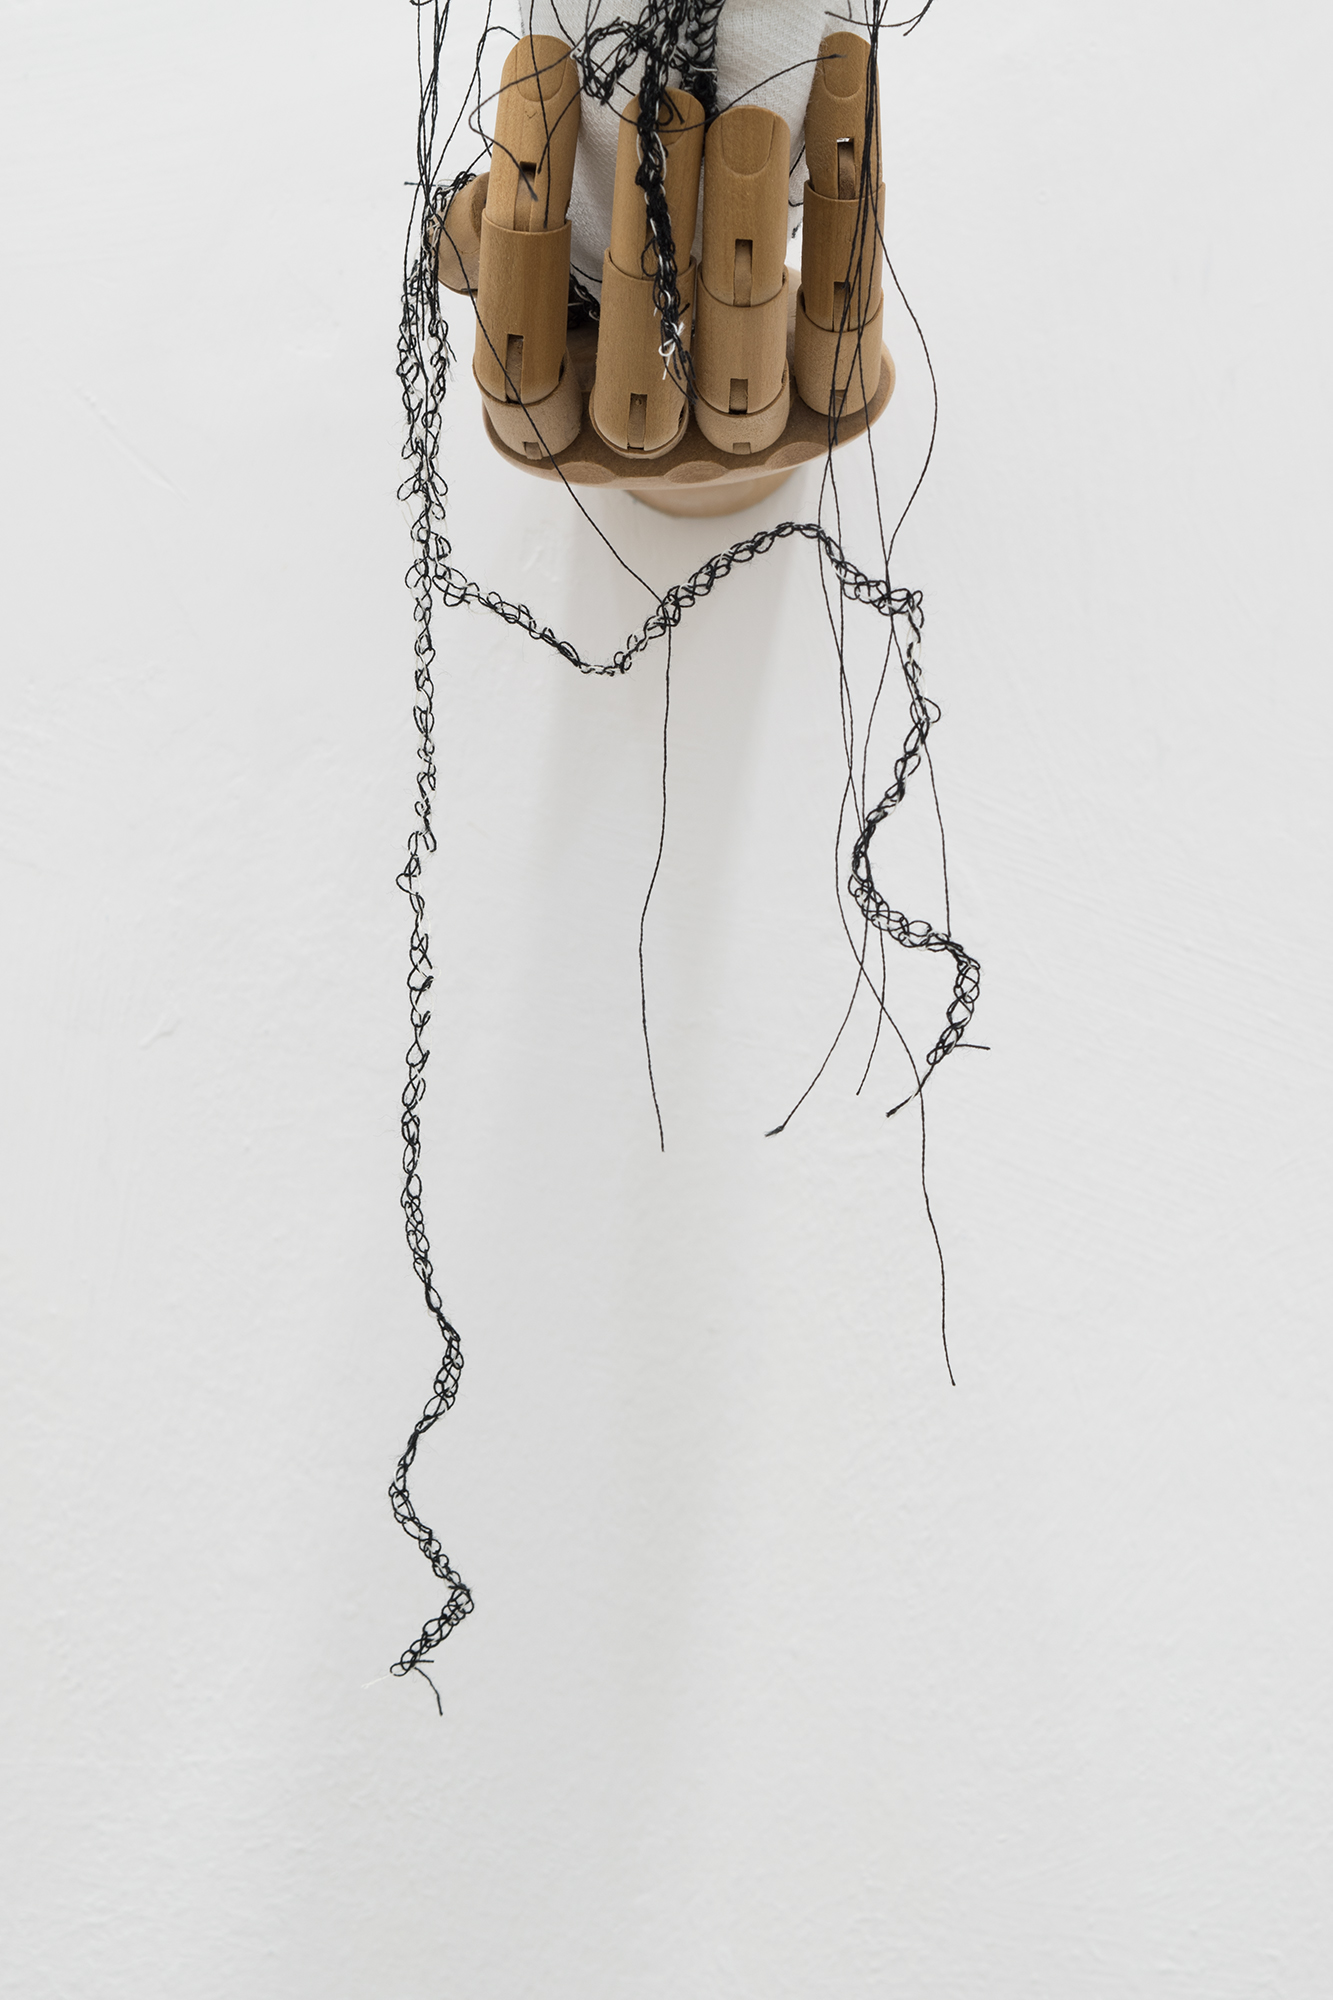 Mariantonietta Bagliato, Mannequeen, 2018, (detail), textile, stuffing, wood manikin hand, embroidery, 15 x 12 x 24 cm.